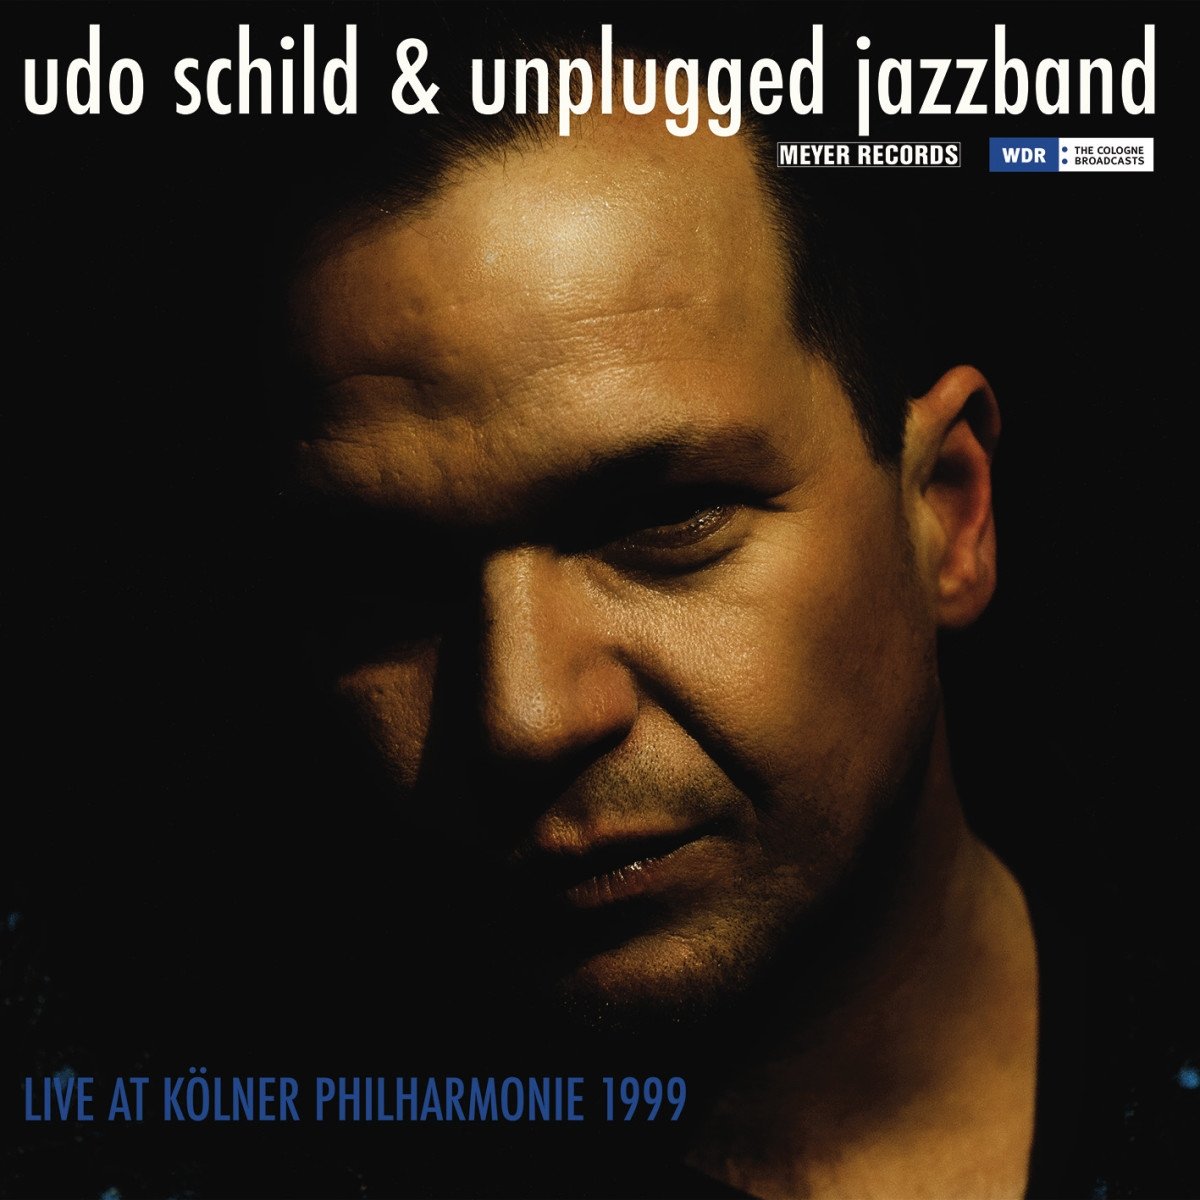 Vinile Udo Schild & Unplugged Jazzband - Live At Kolner Philharmonie 1999 NUOVO SIGILLATO, EDIZIONE DEL 31/03/2017 SUBITO DISPONIBILE